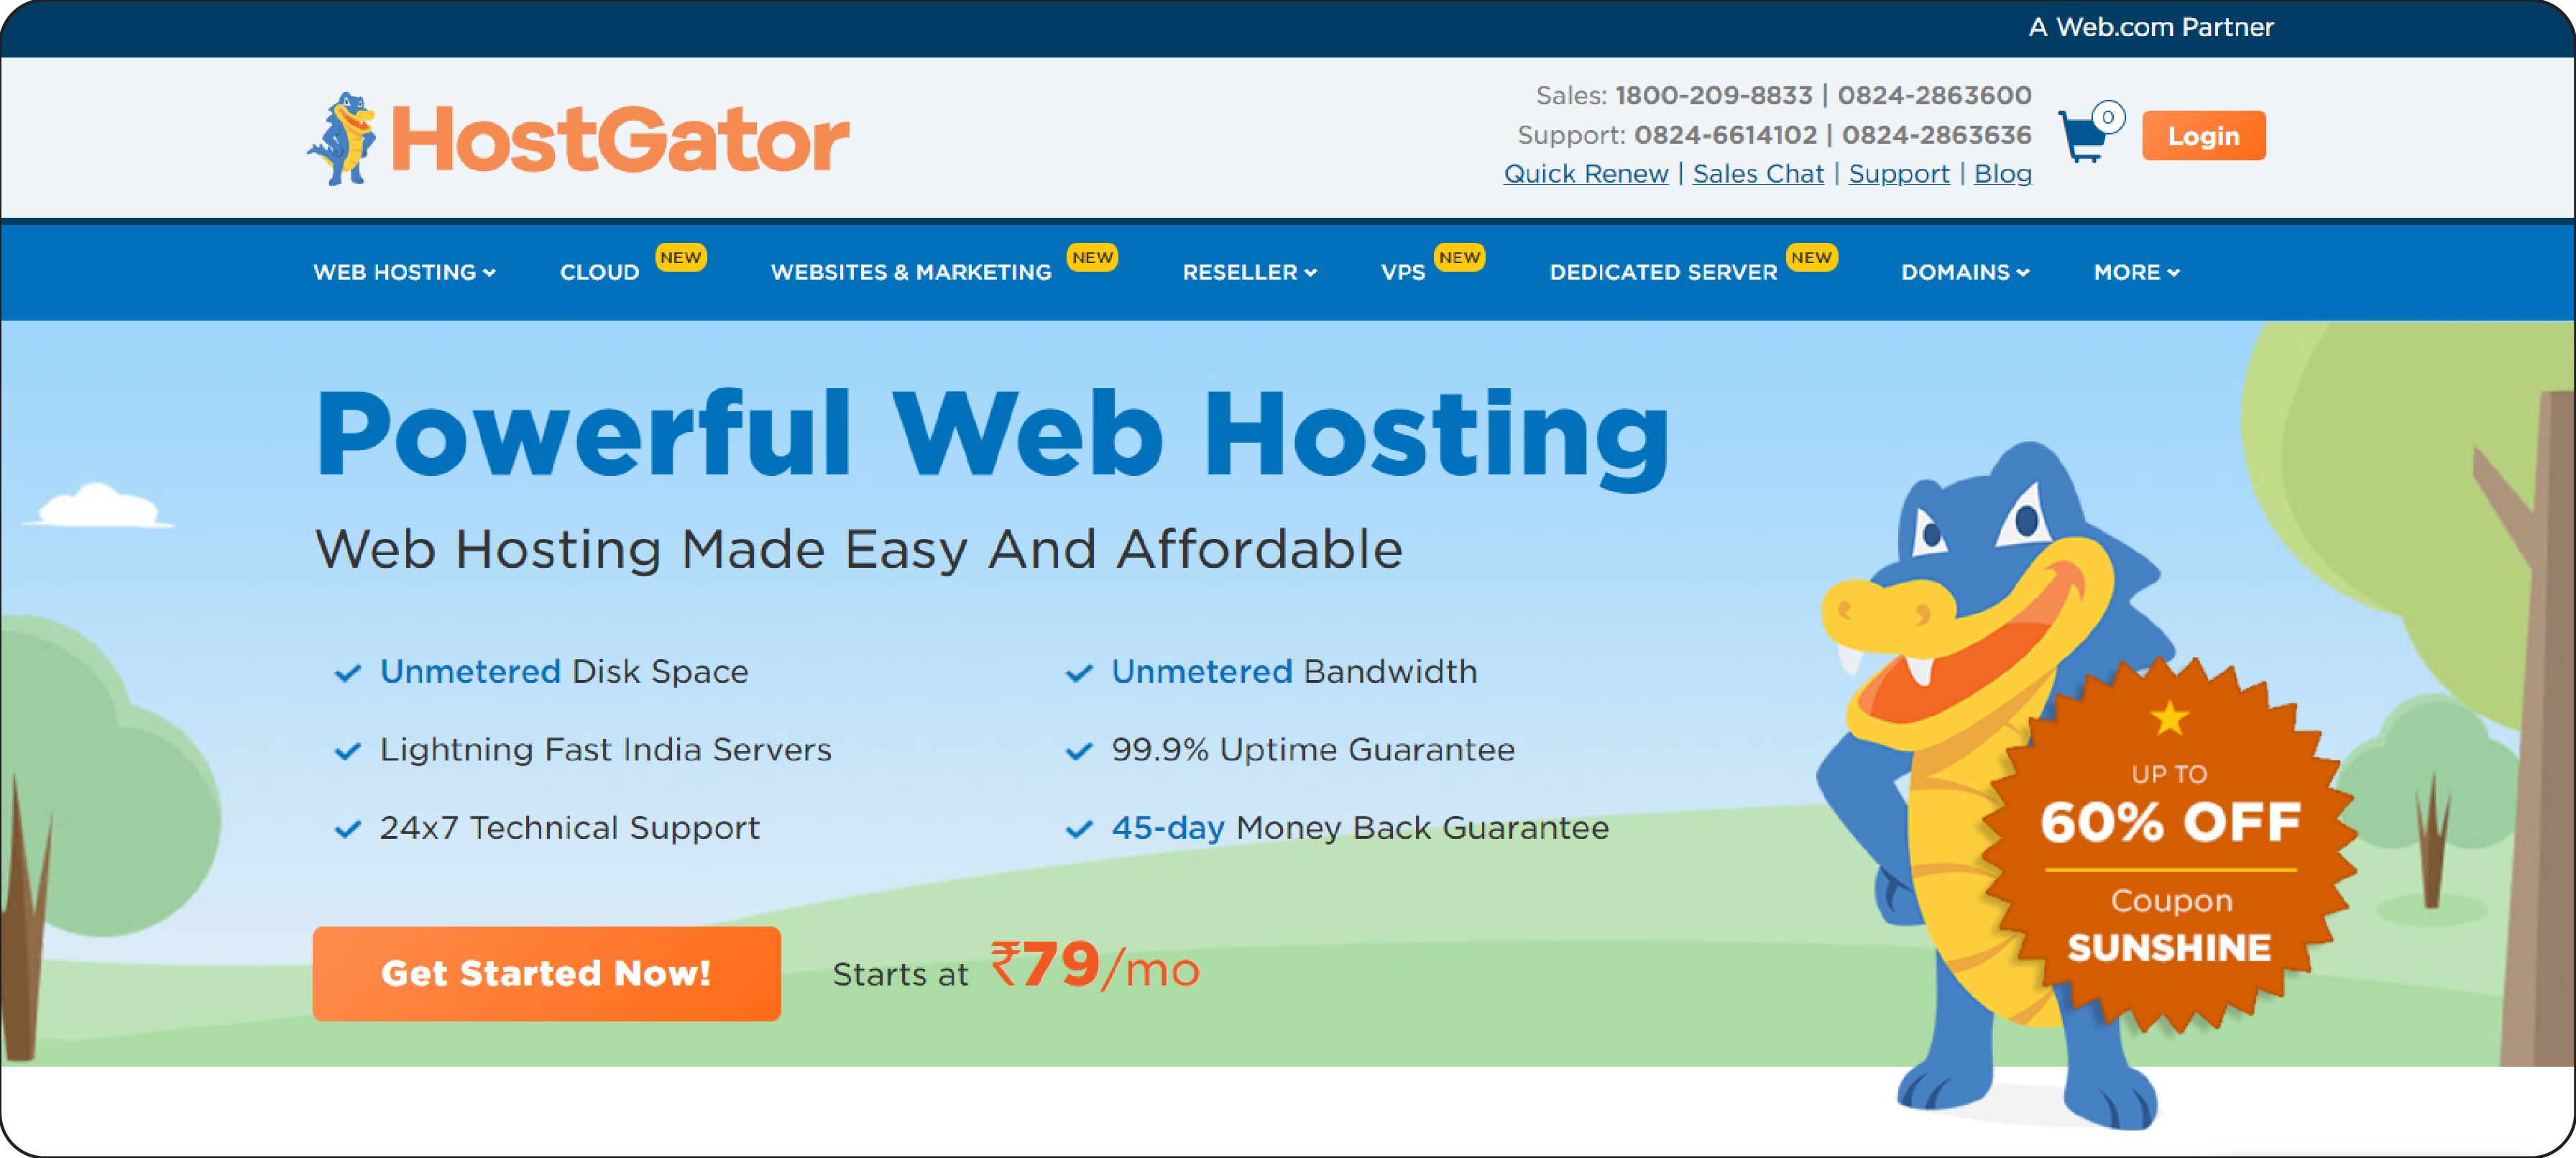 HostGator: The ideal Magento hosting solution for startups